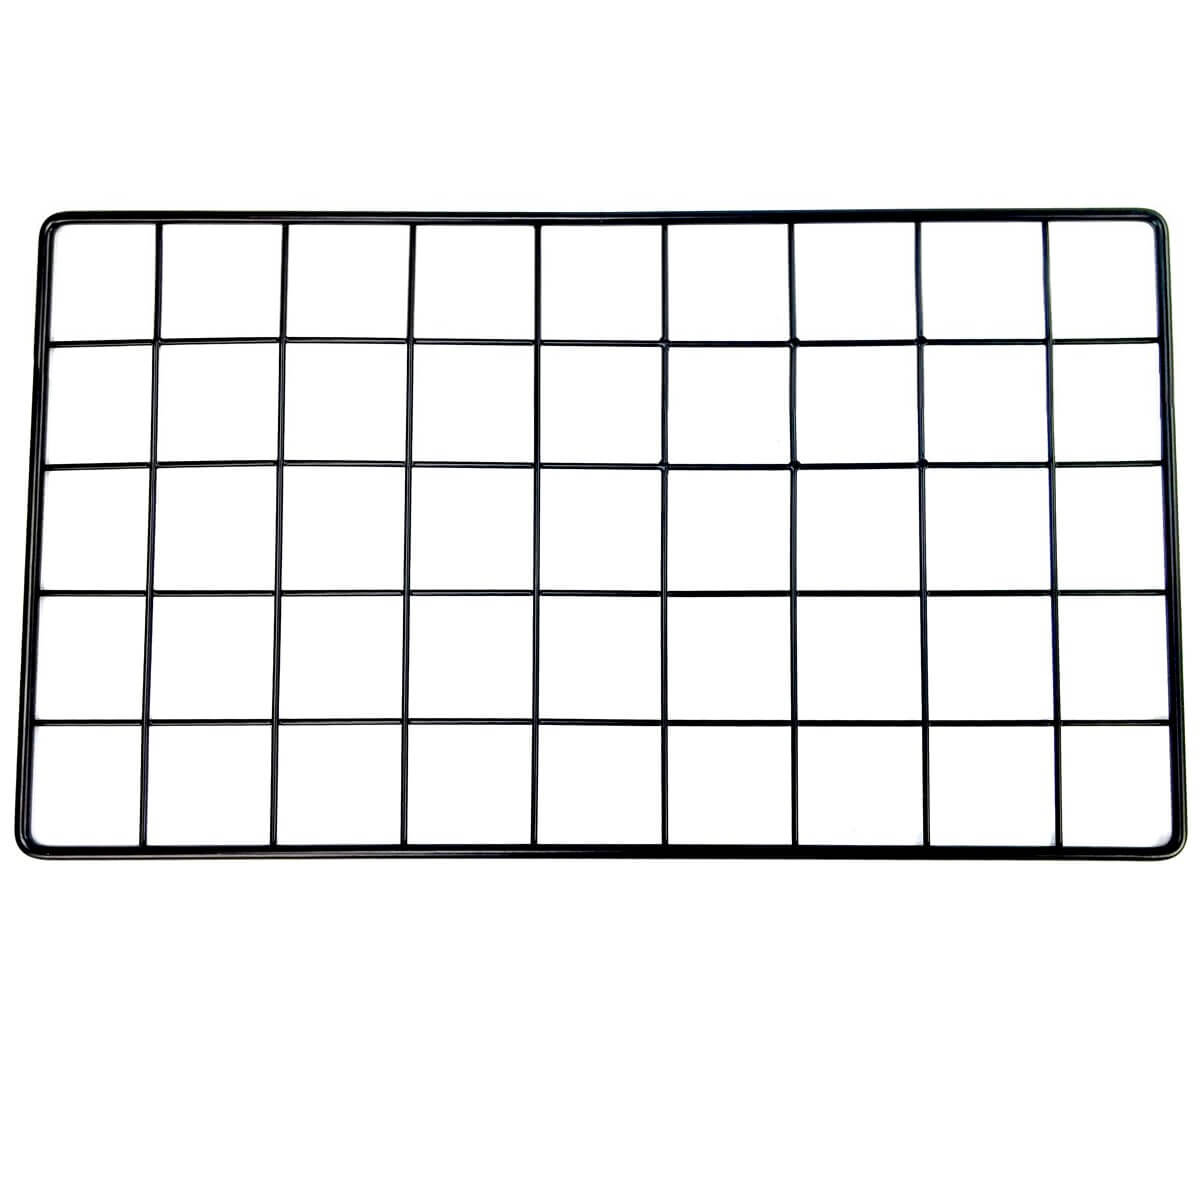 Half grid wide in black